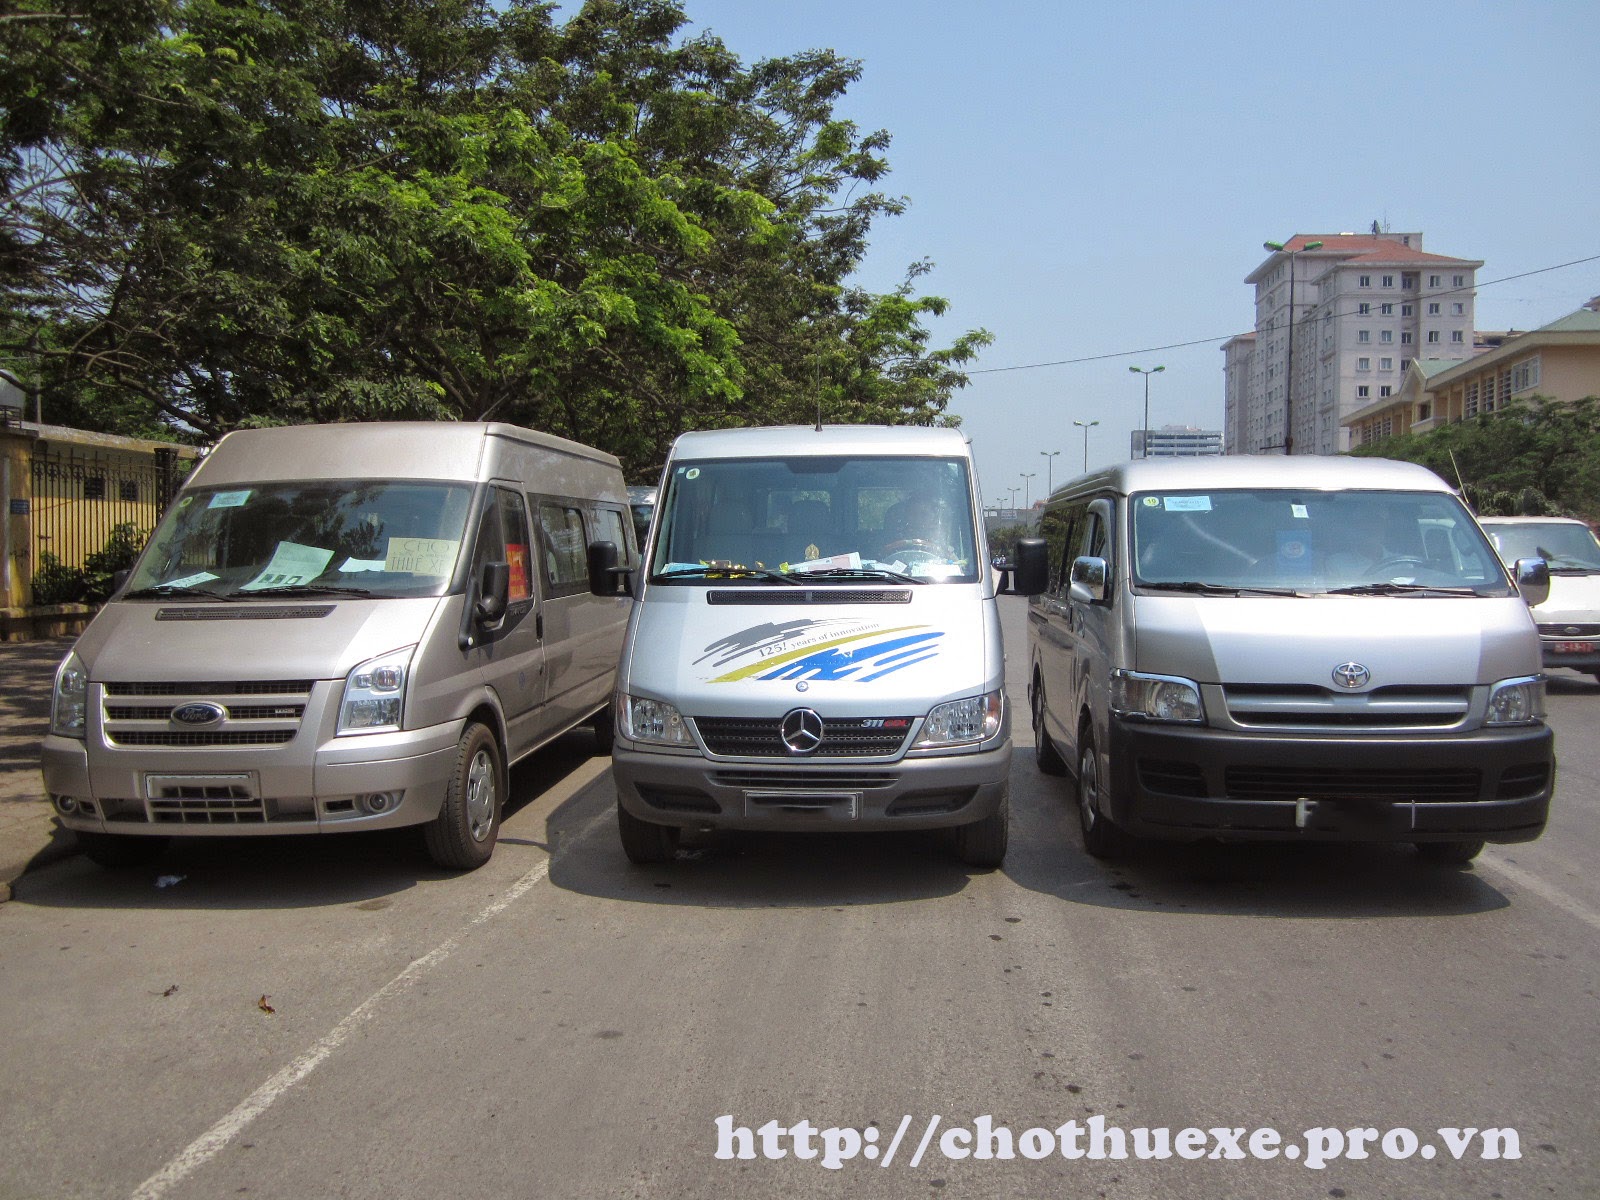 Cho thuê xe giá rẻ, xe tháng, xe du lịch tại Hà Nội